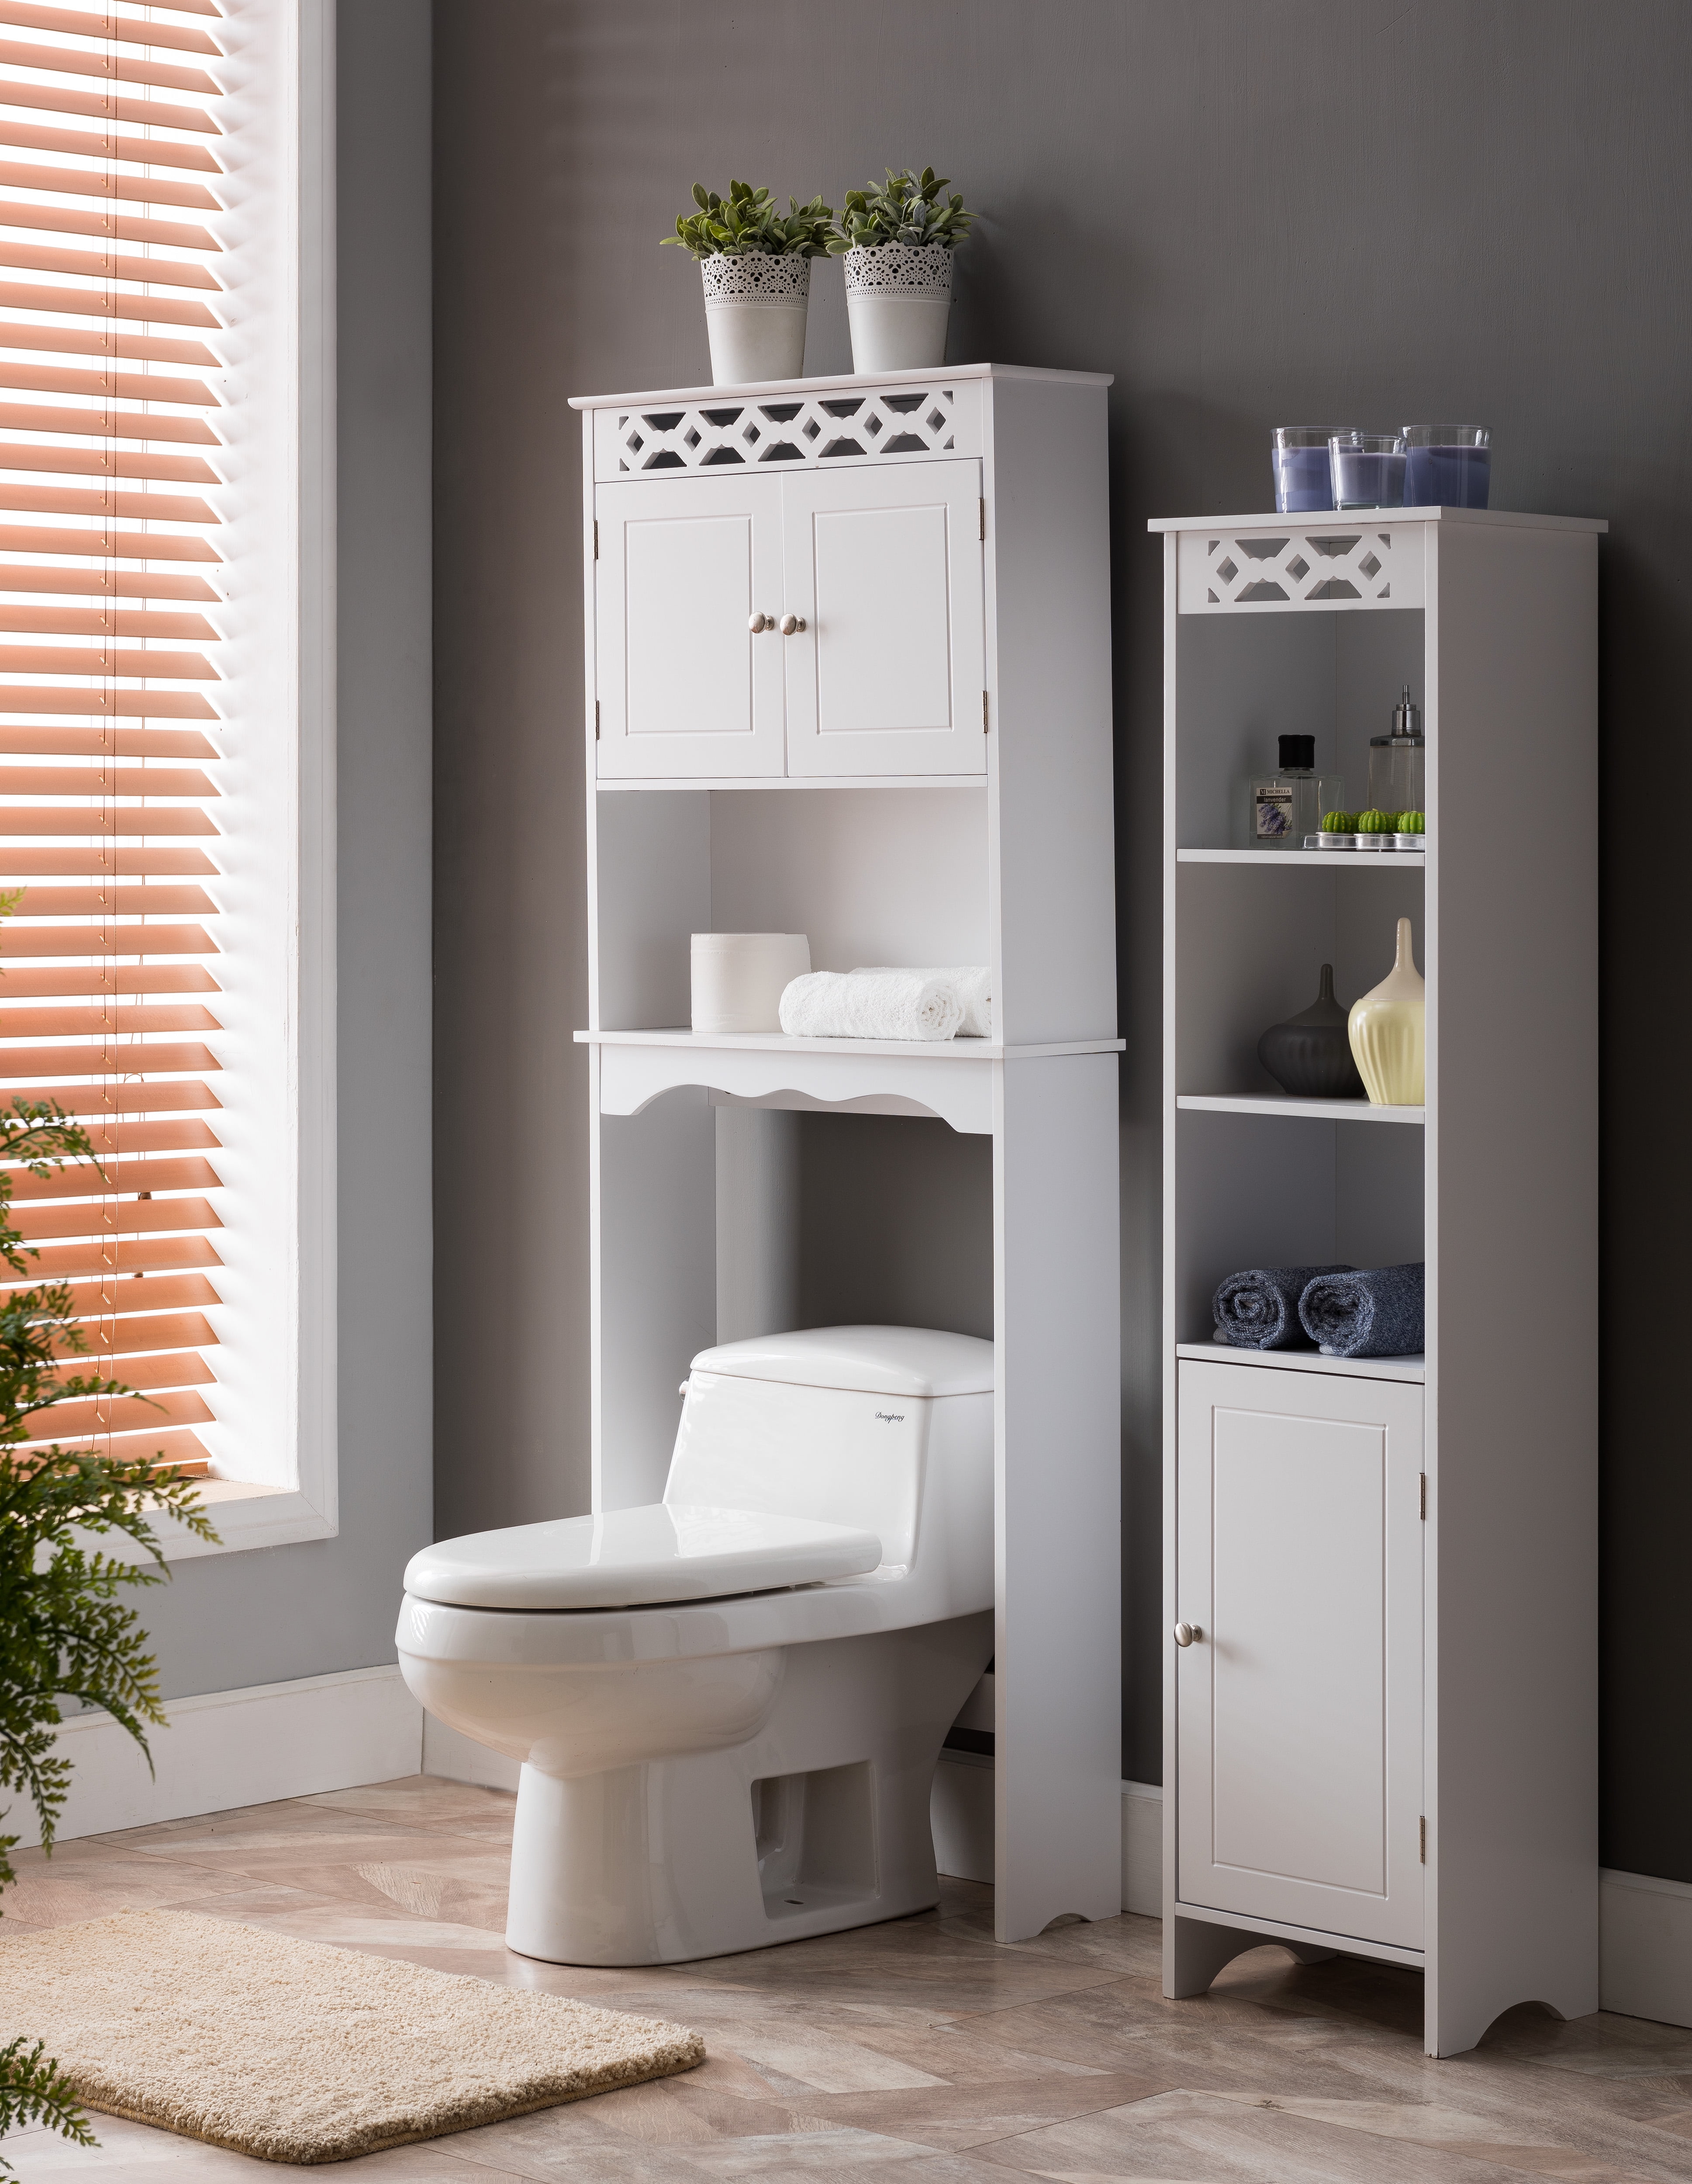 Lichfield 2 Piece Bathroom Storage Set, White Wood (Tower Cabinet